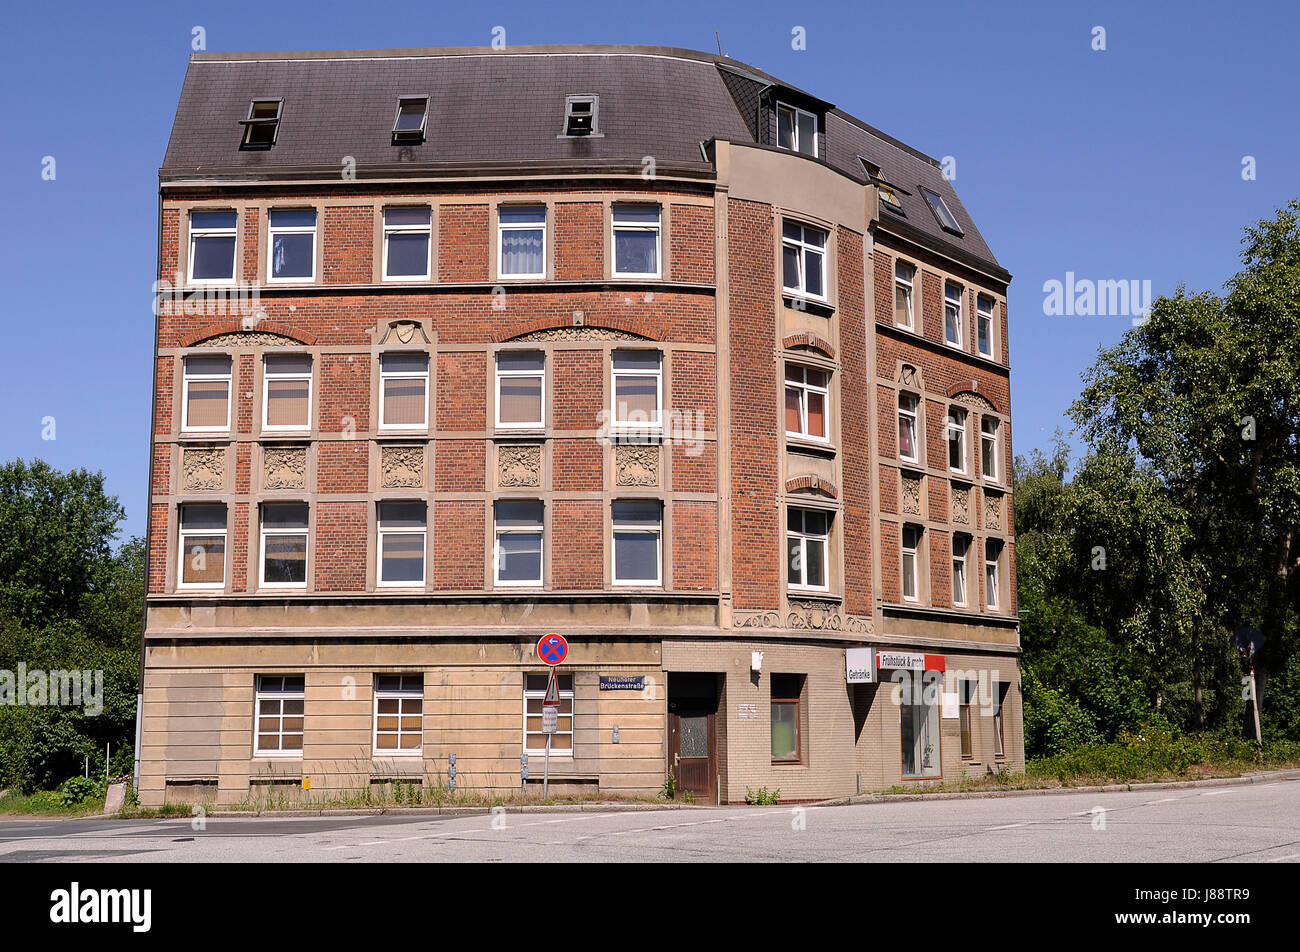 Afligidos, Hamburgo, de varios pisos, vacantes, viejo, construcción de edificios, la protección de la Foto de stock